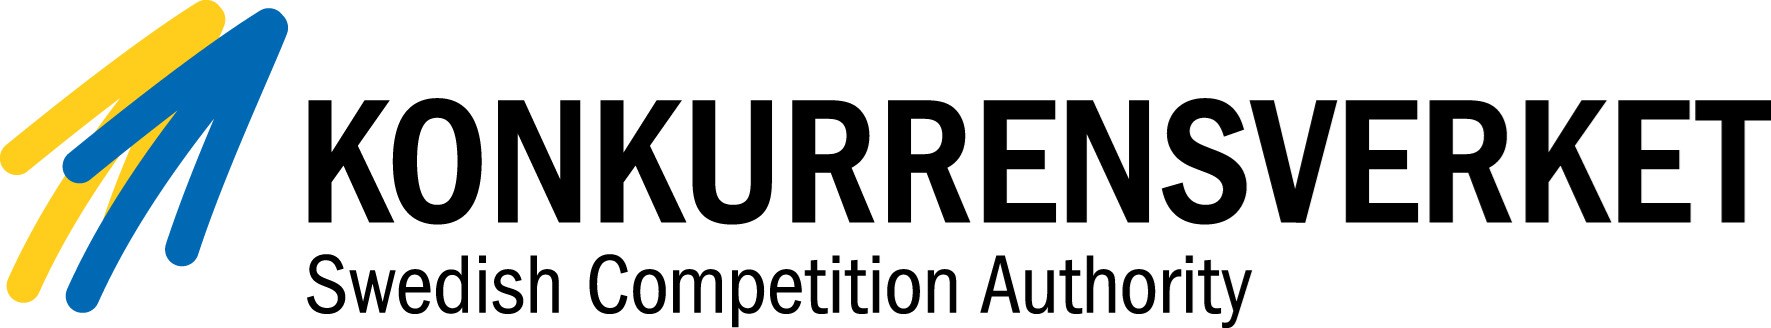 Konkurrensverket logo